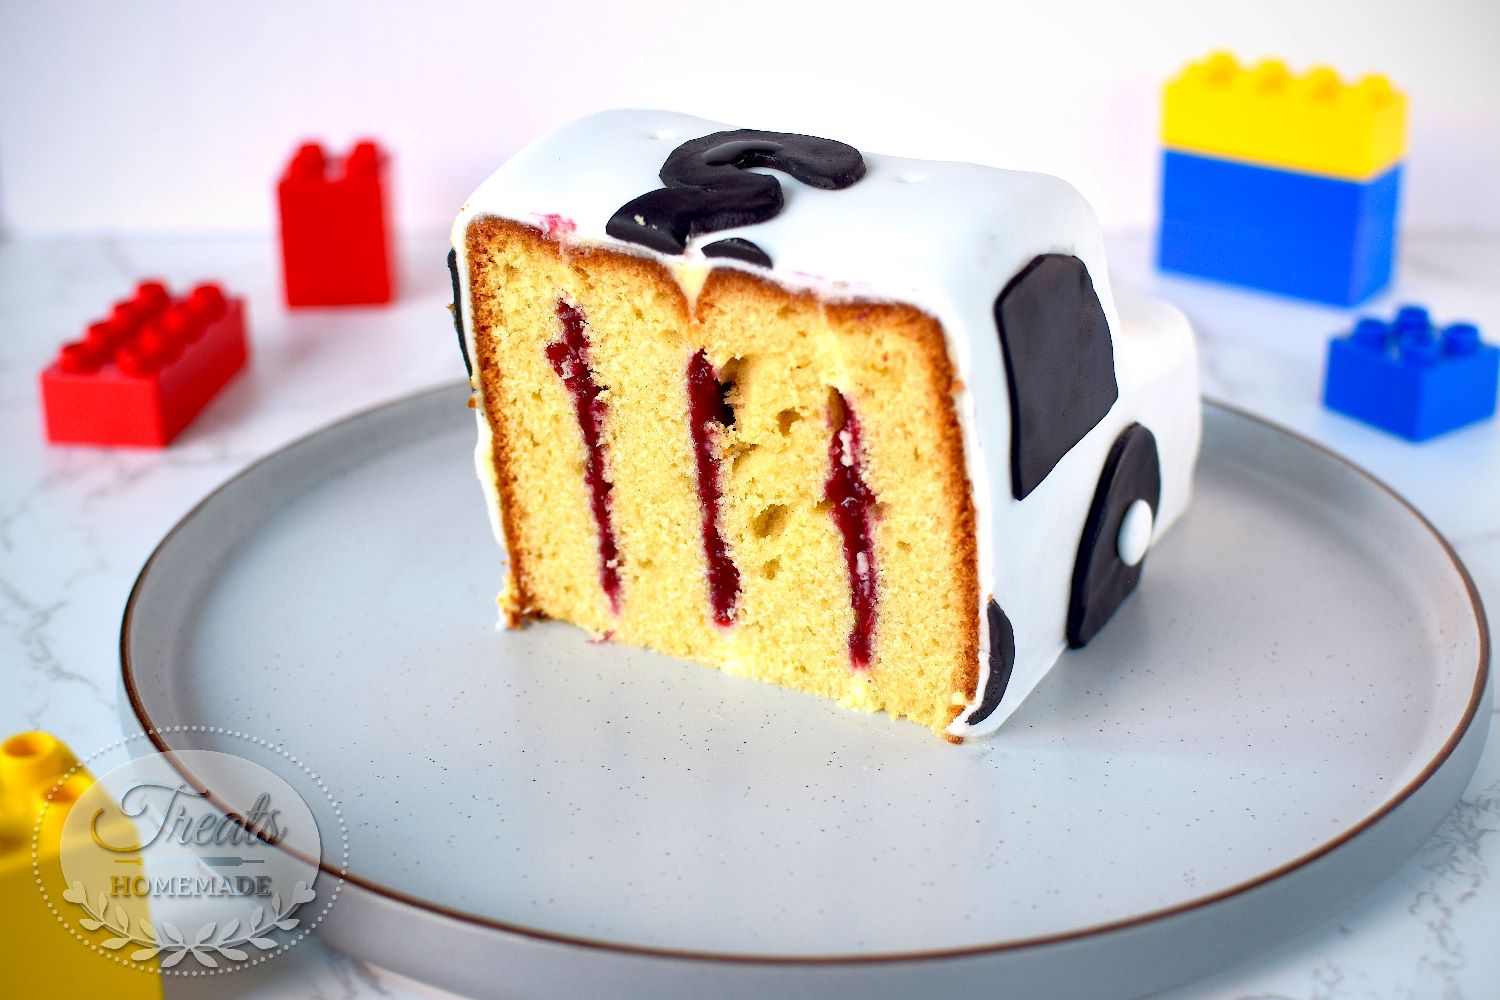 18Th Car Birthday Cake - CakeCentral.com-sgquangbinhtourist.com.vn